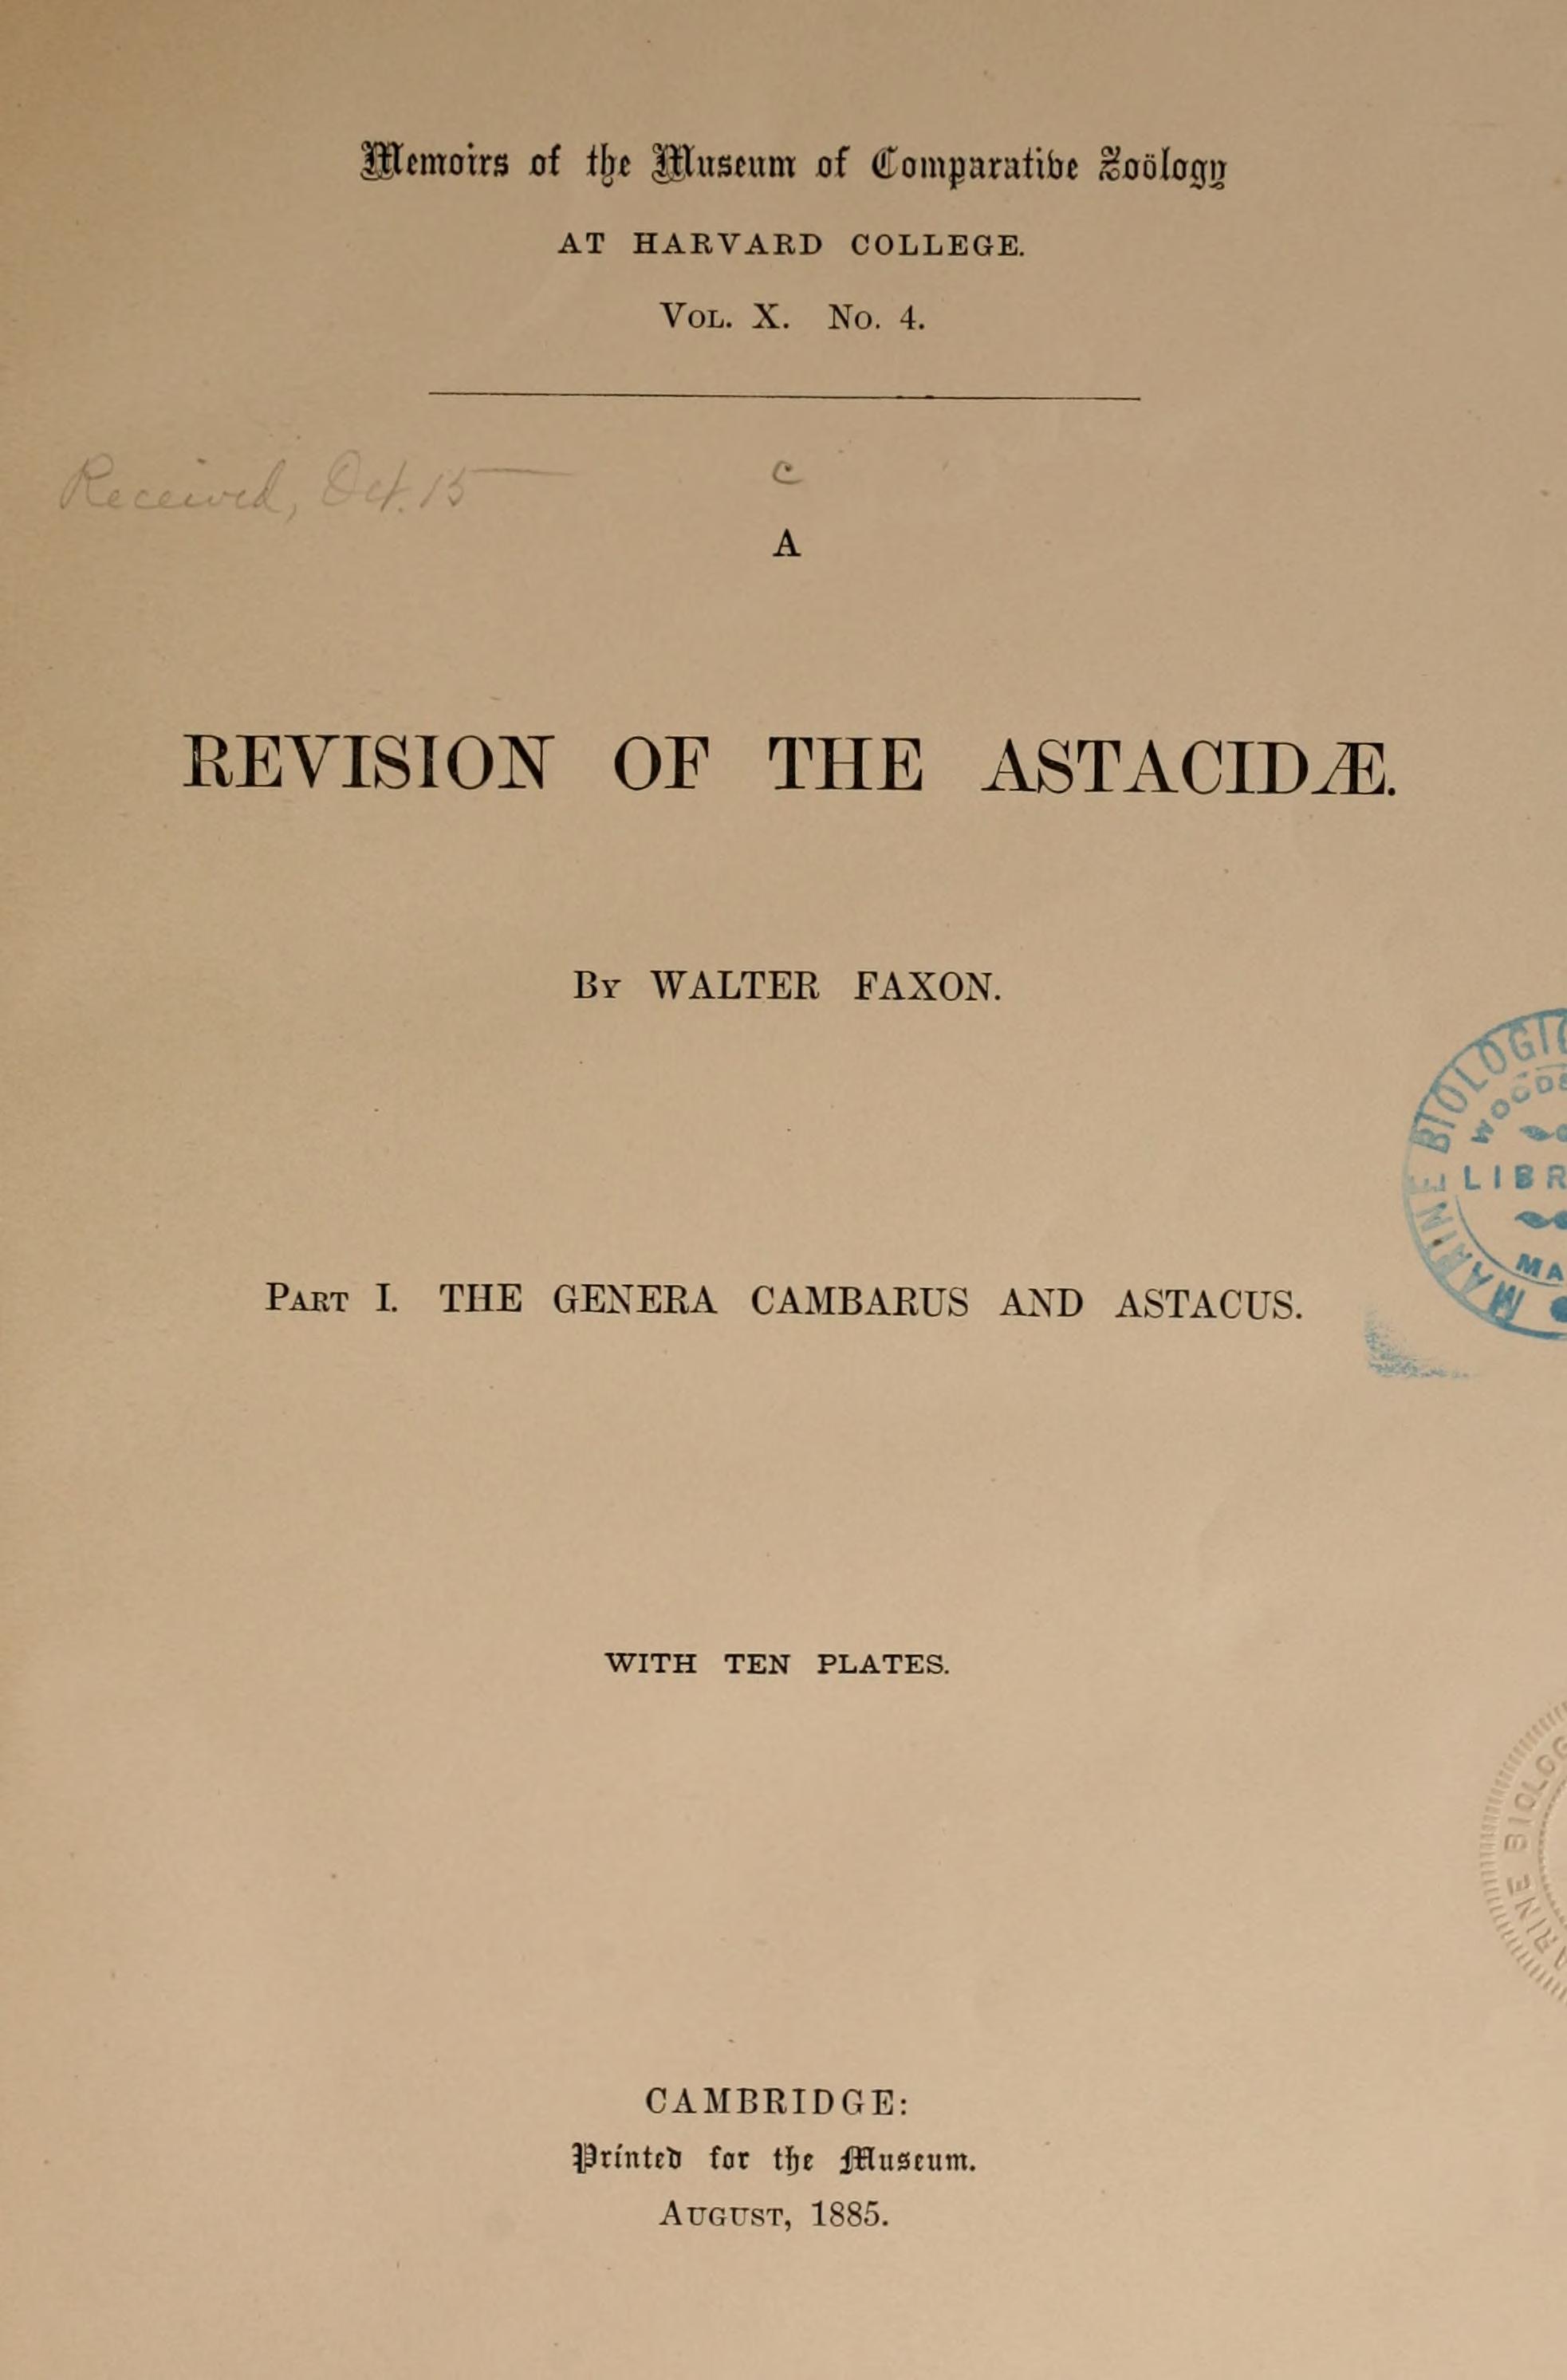 Media type: text; Faxon 1885 Description: MCZ Memoirs Vol. X no. 4;